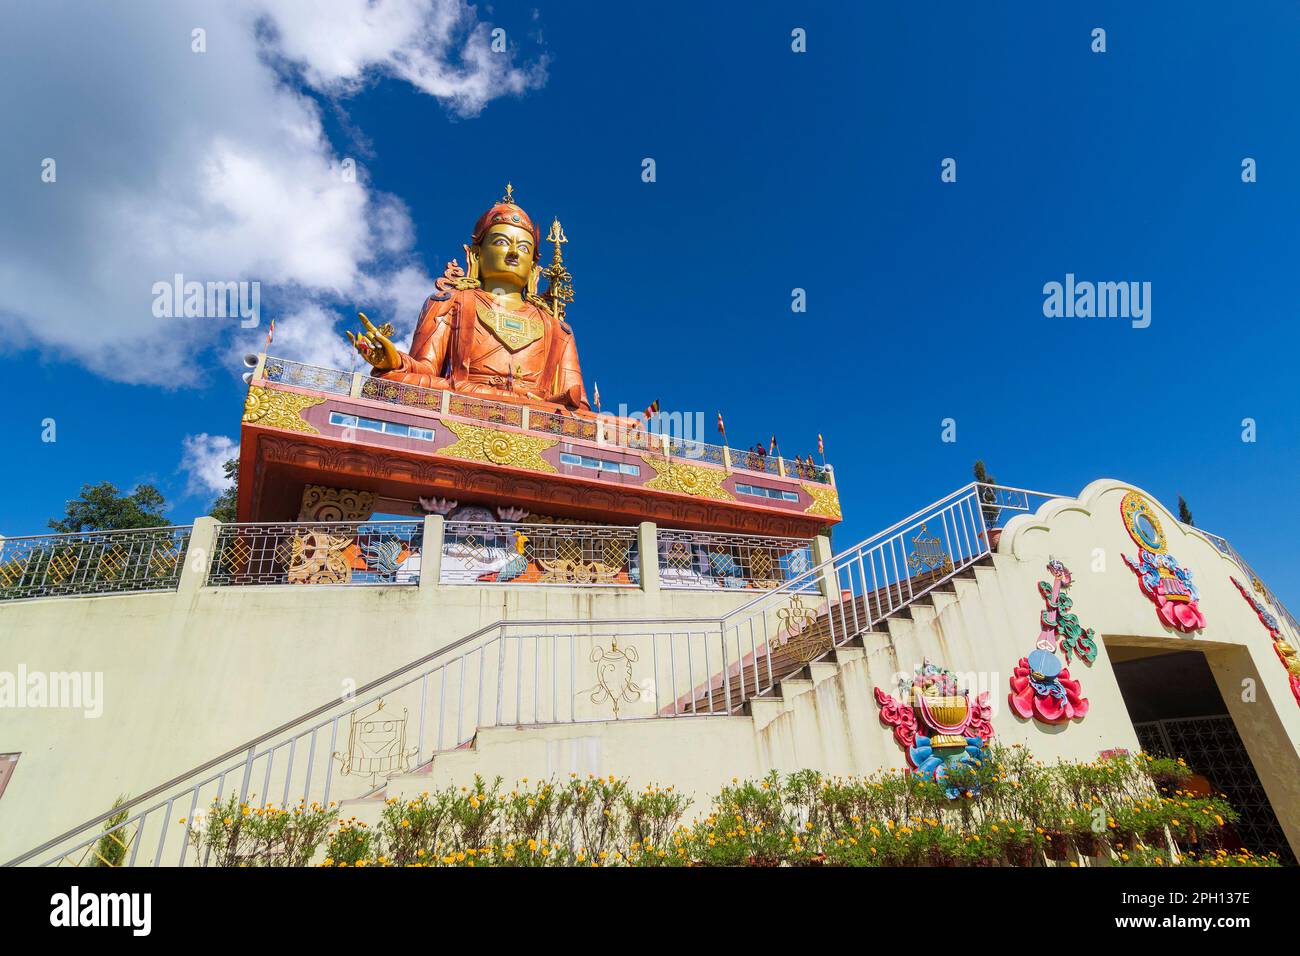 La Sainte statue de Guru Padmasambhava ou née d'un lotus, Guru Rinpoché, était un maître bouddhiste indien tantrique Vajra qui enseignait Vajrayana au Tibet. Banque D'Images